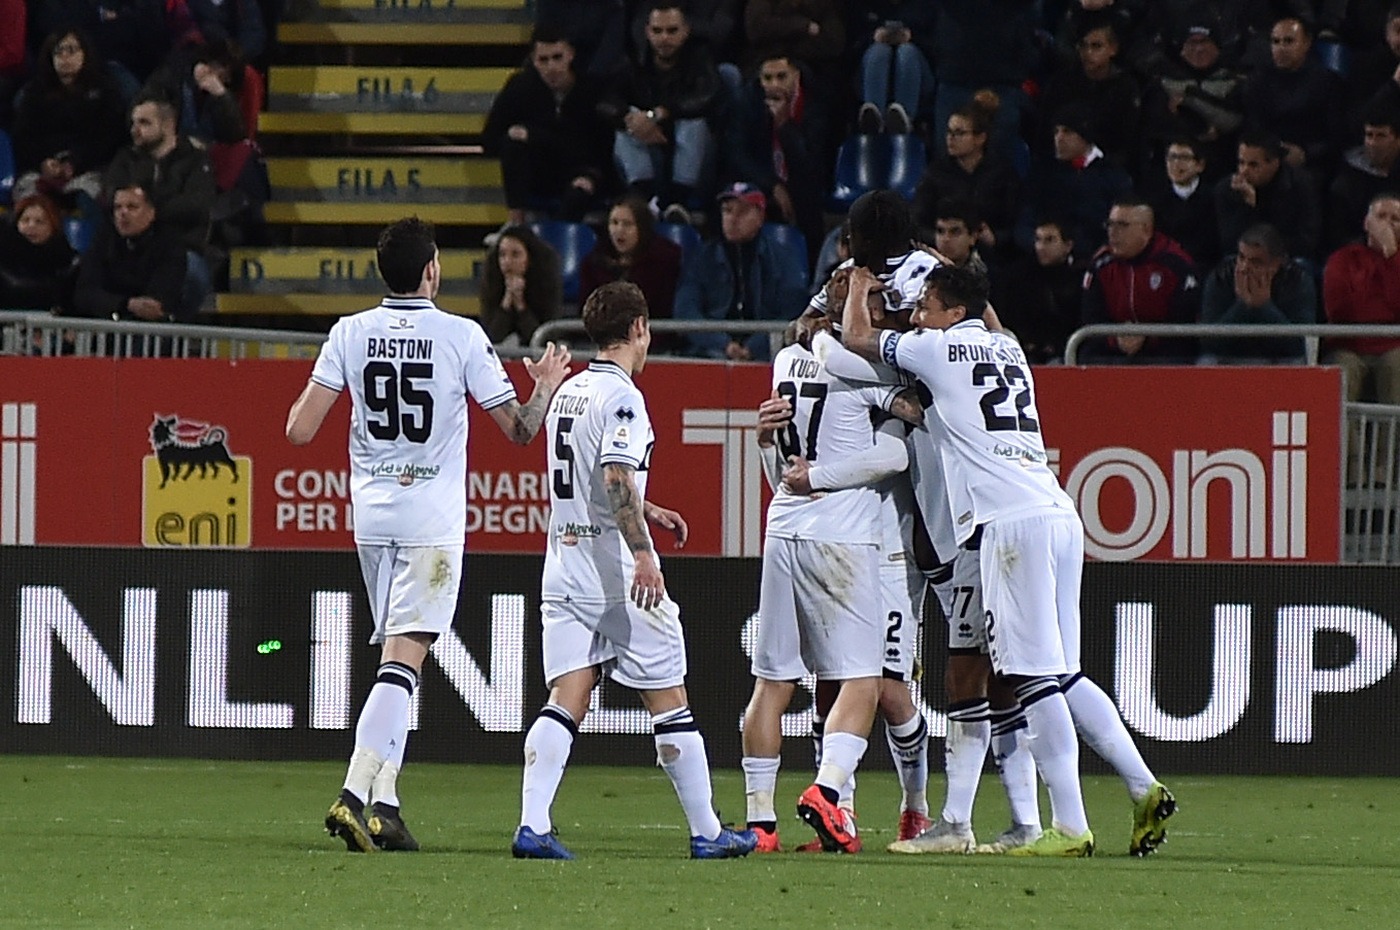 Serie A, Chievo Verona-Parma domenica 28 aprile: analisi e pronostico della 34ma giornata del campionato italiano